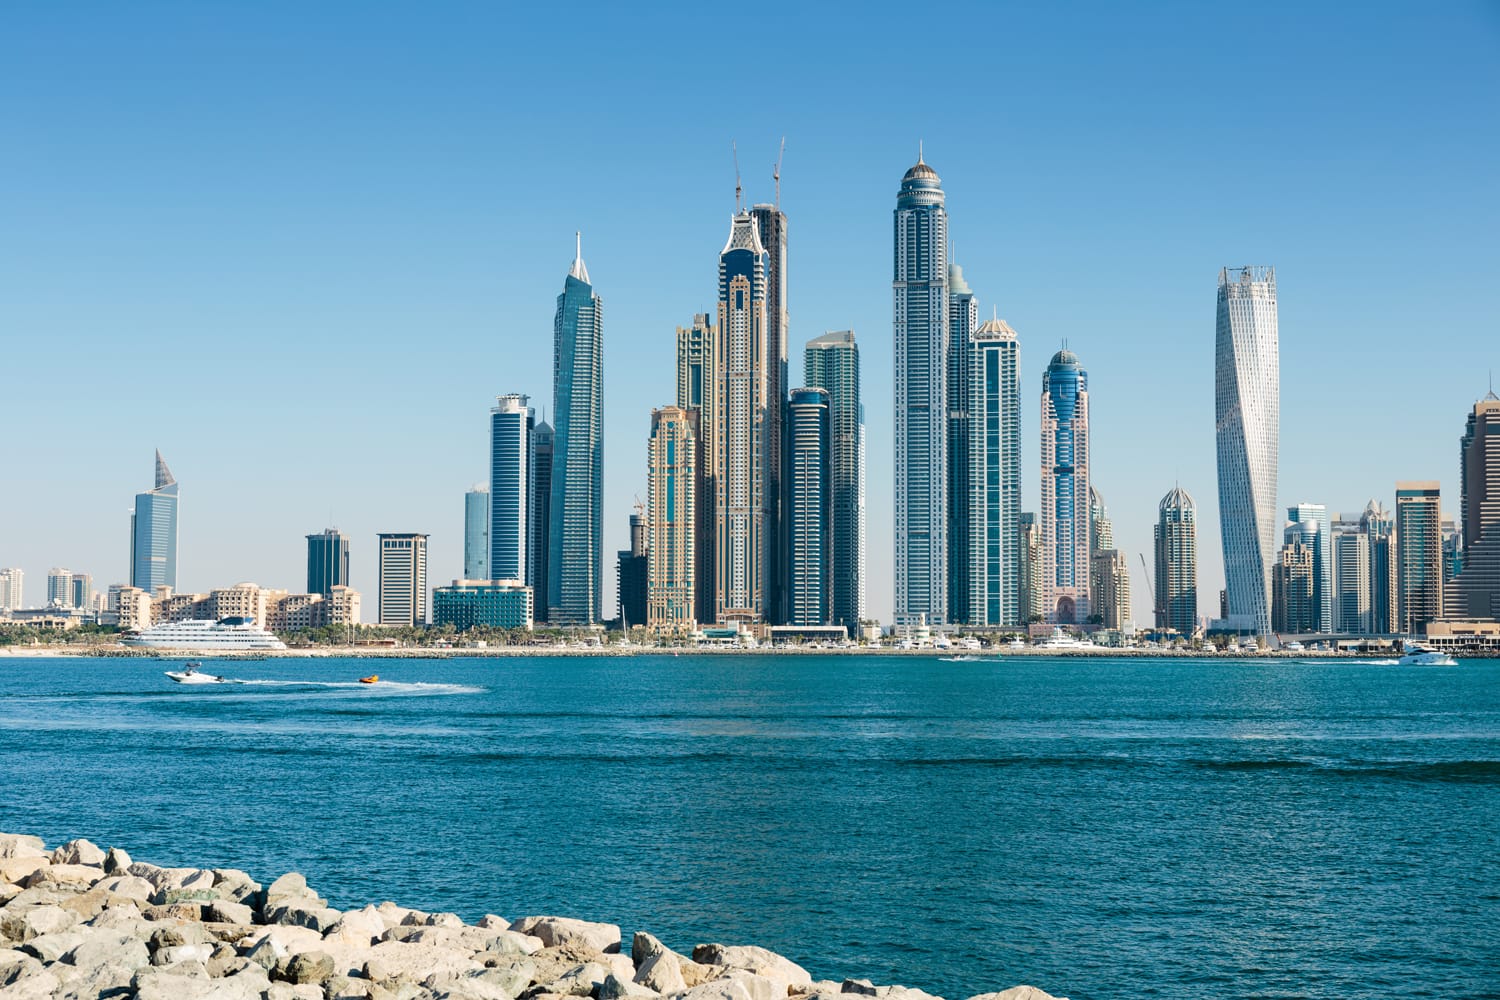 Dubai skyline seen from the ocean